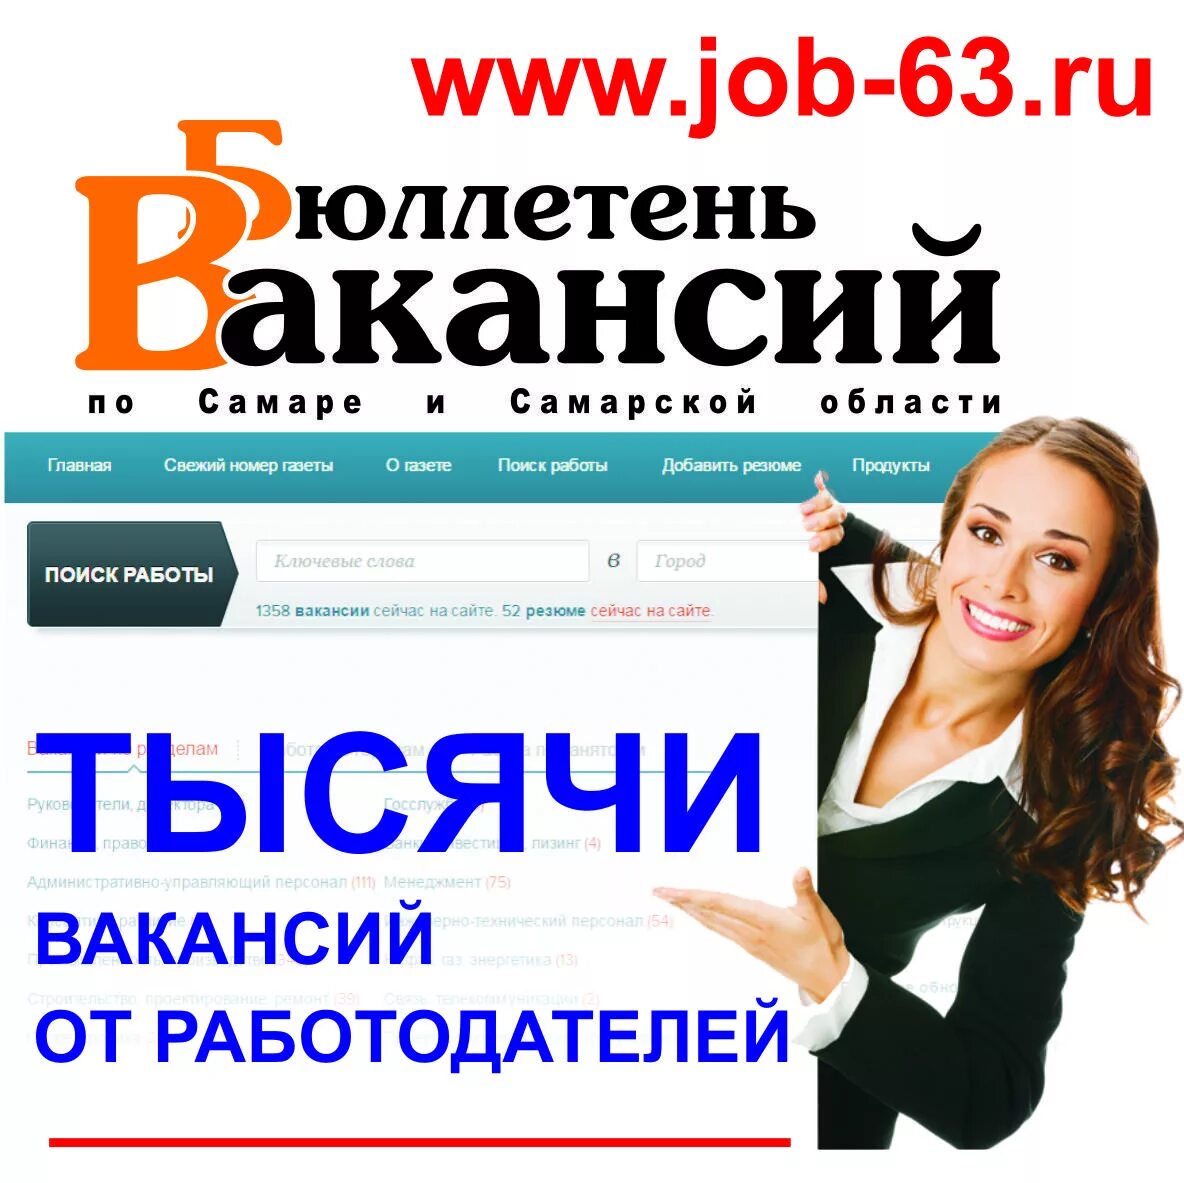 Работа в москве бухгалтером от прямых работодателей. Найти работу. Ищу работу. Поиск вакансий. Вакансии от прямых работодателей.